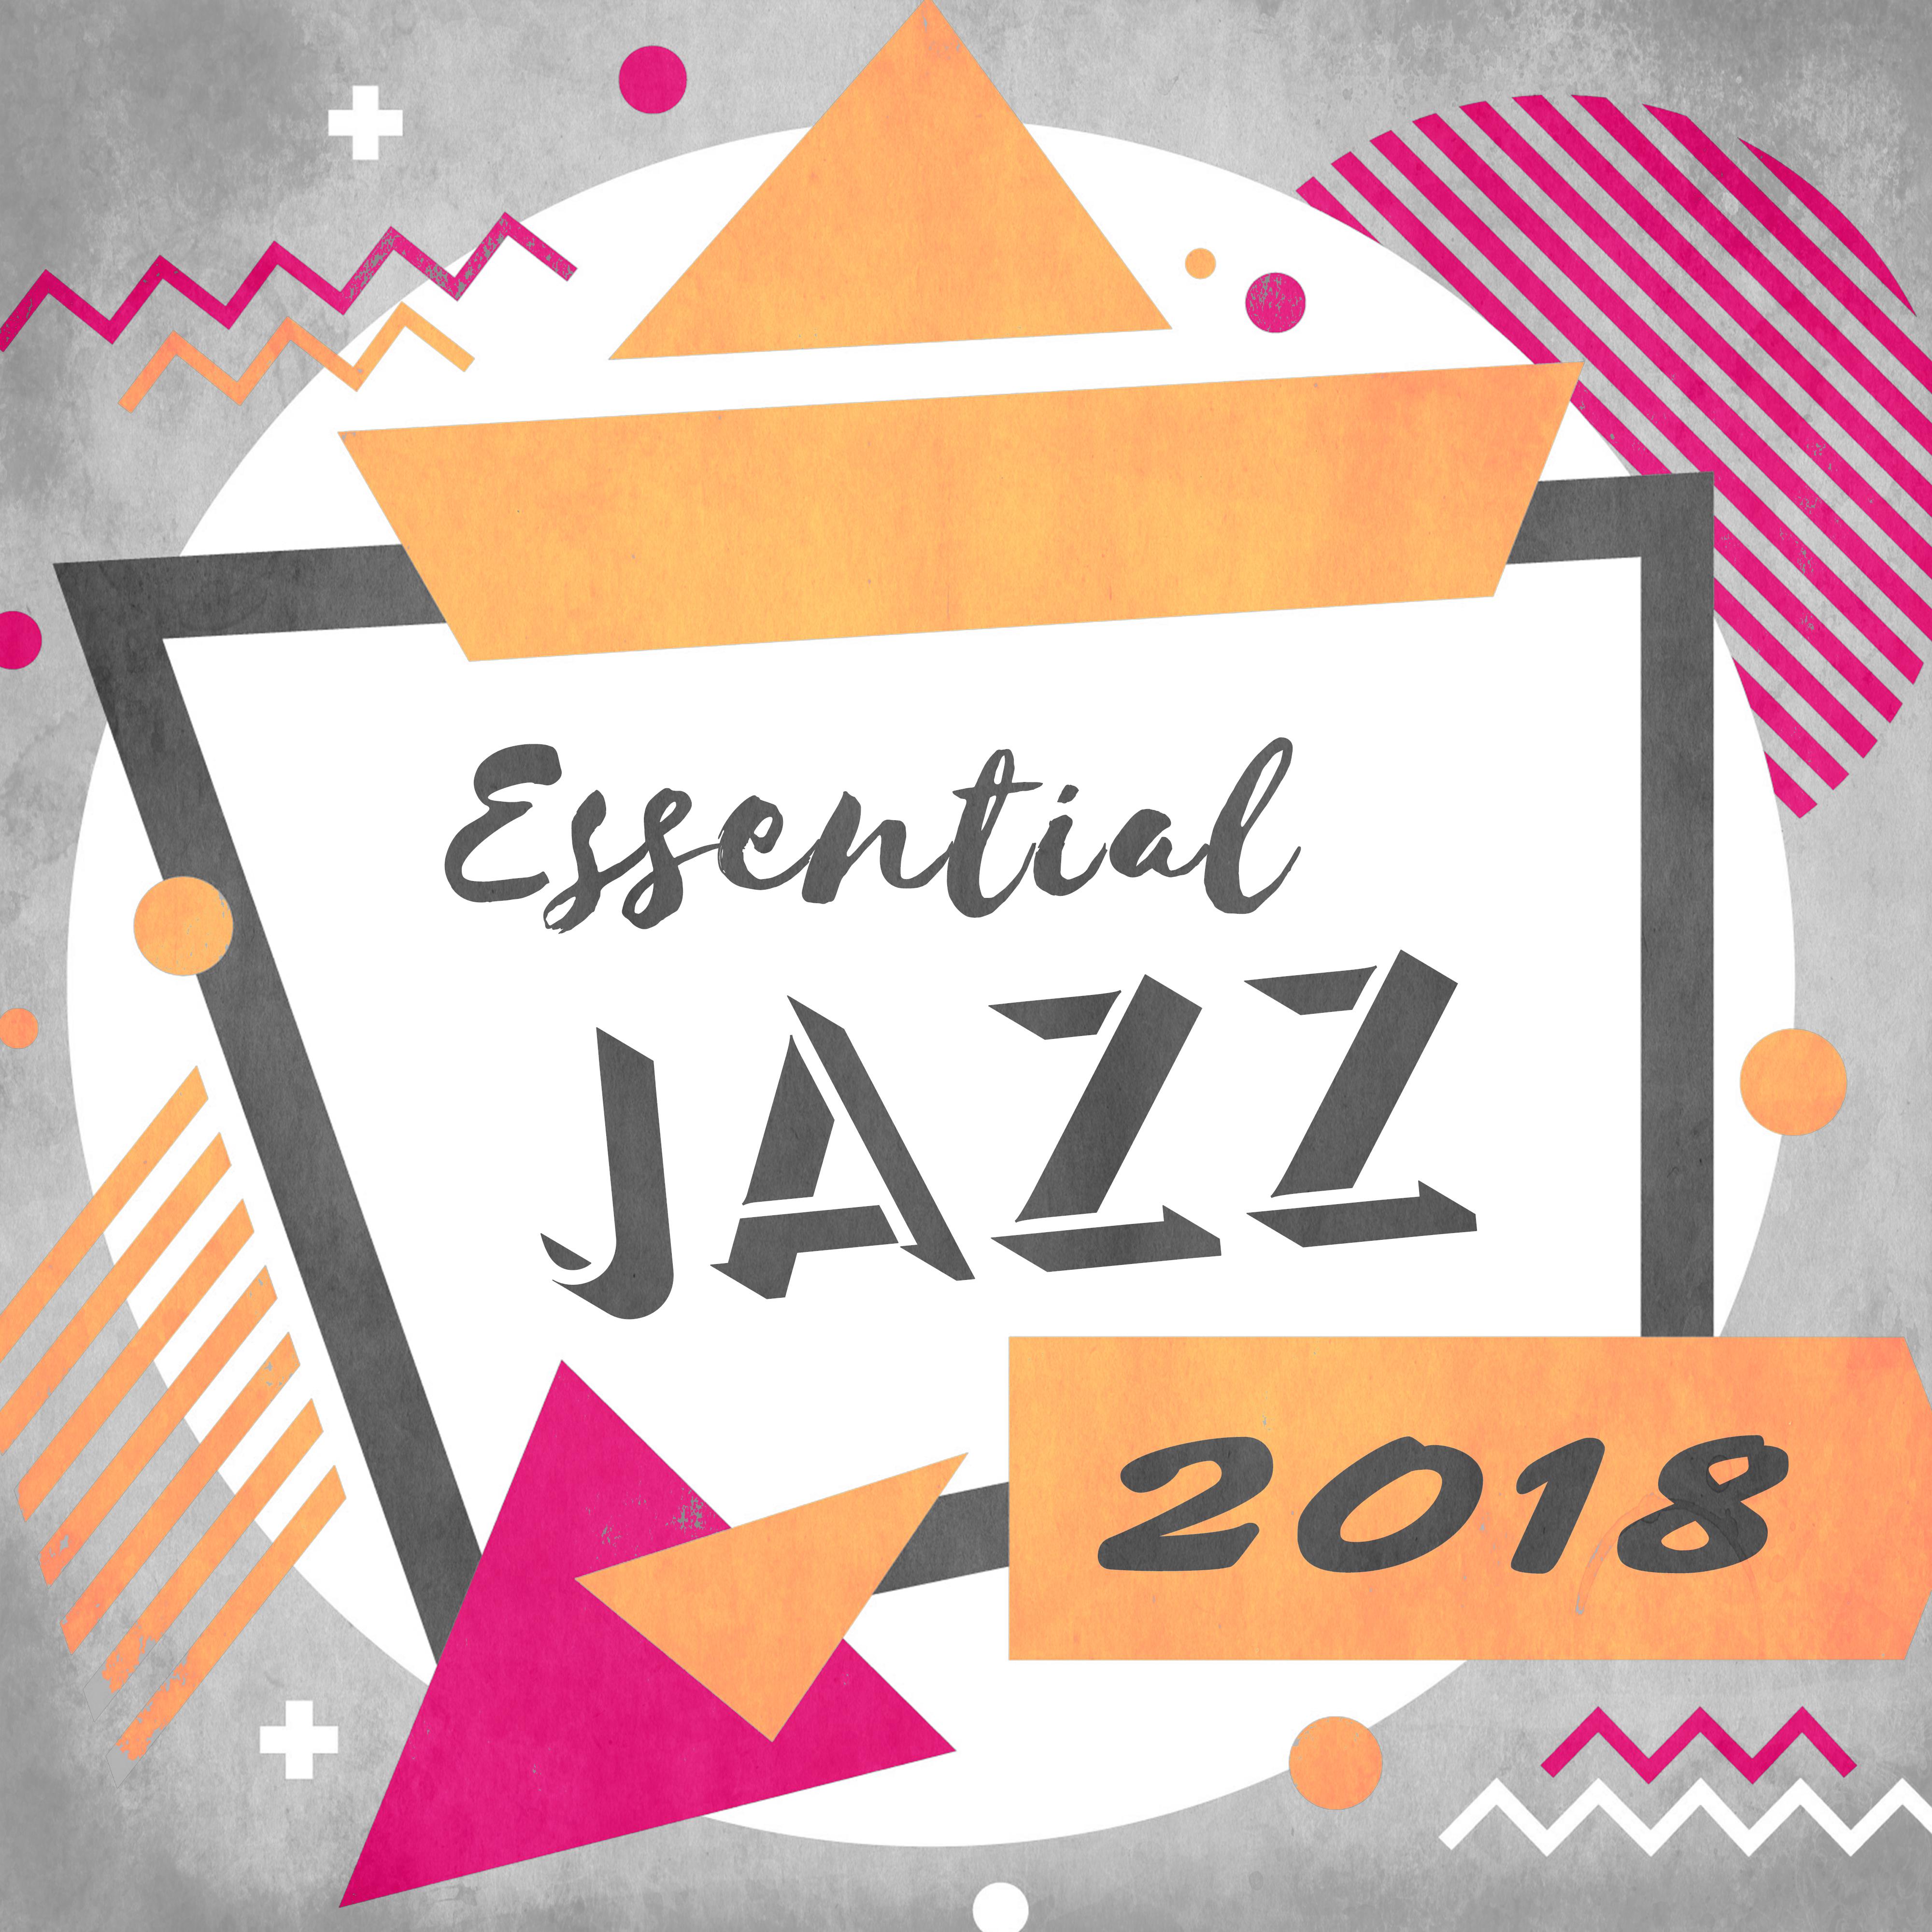 Essential Jazz 2018